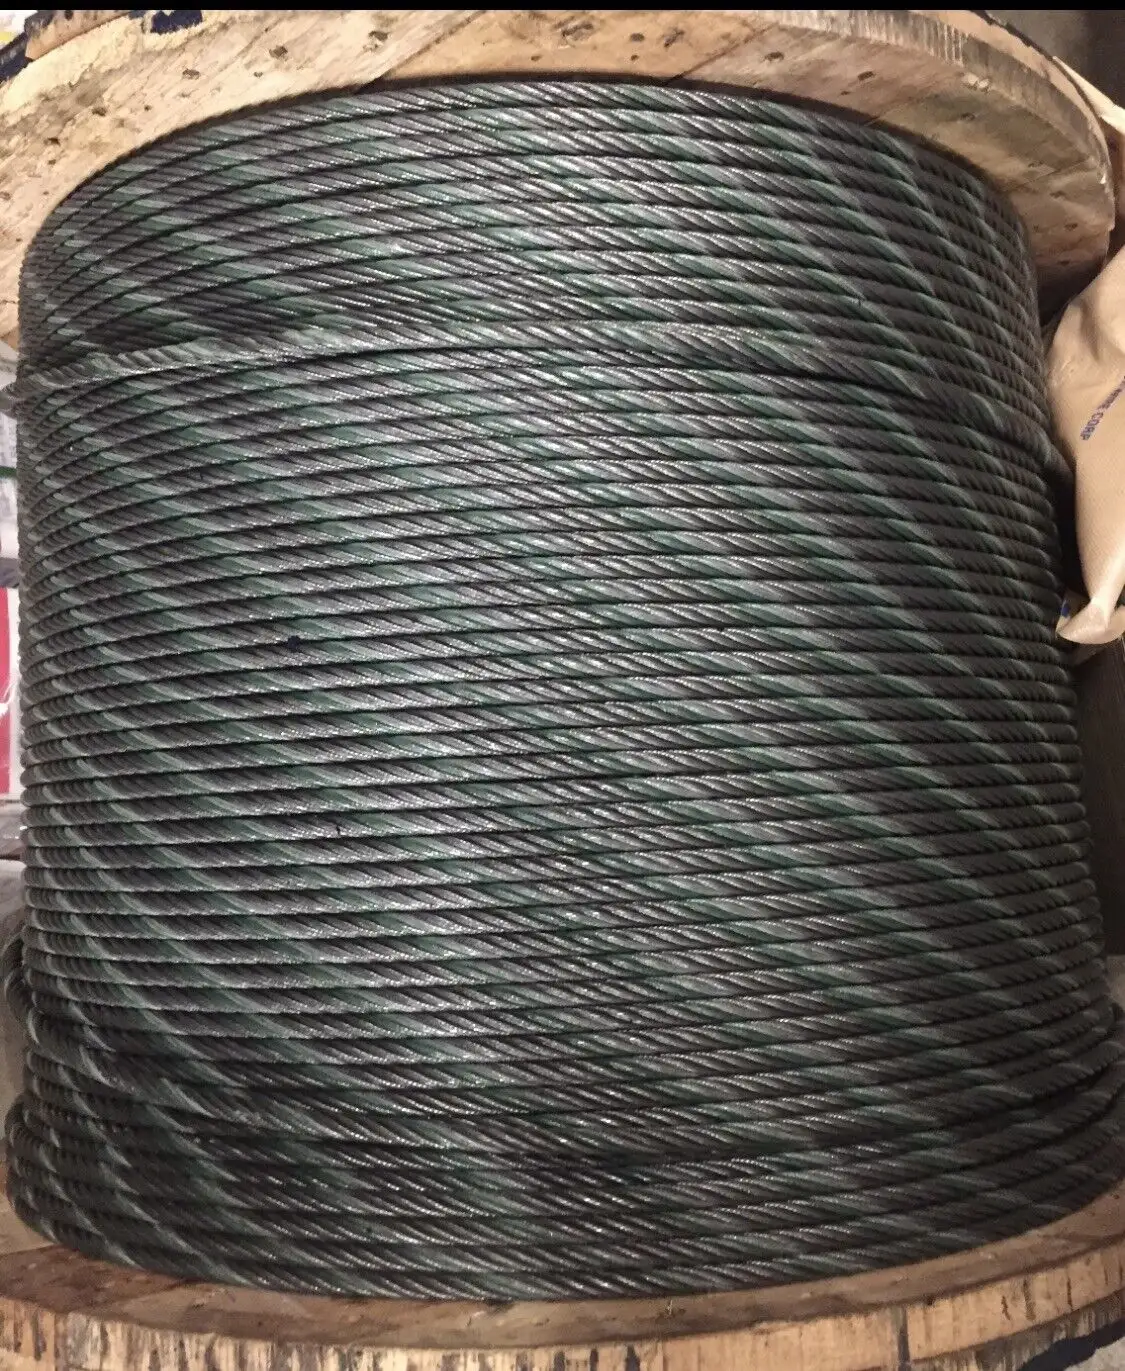 Carrete de cuerda de alambre a granel, polea de aparejo central de acero 6-19, 14 "x 250"